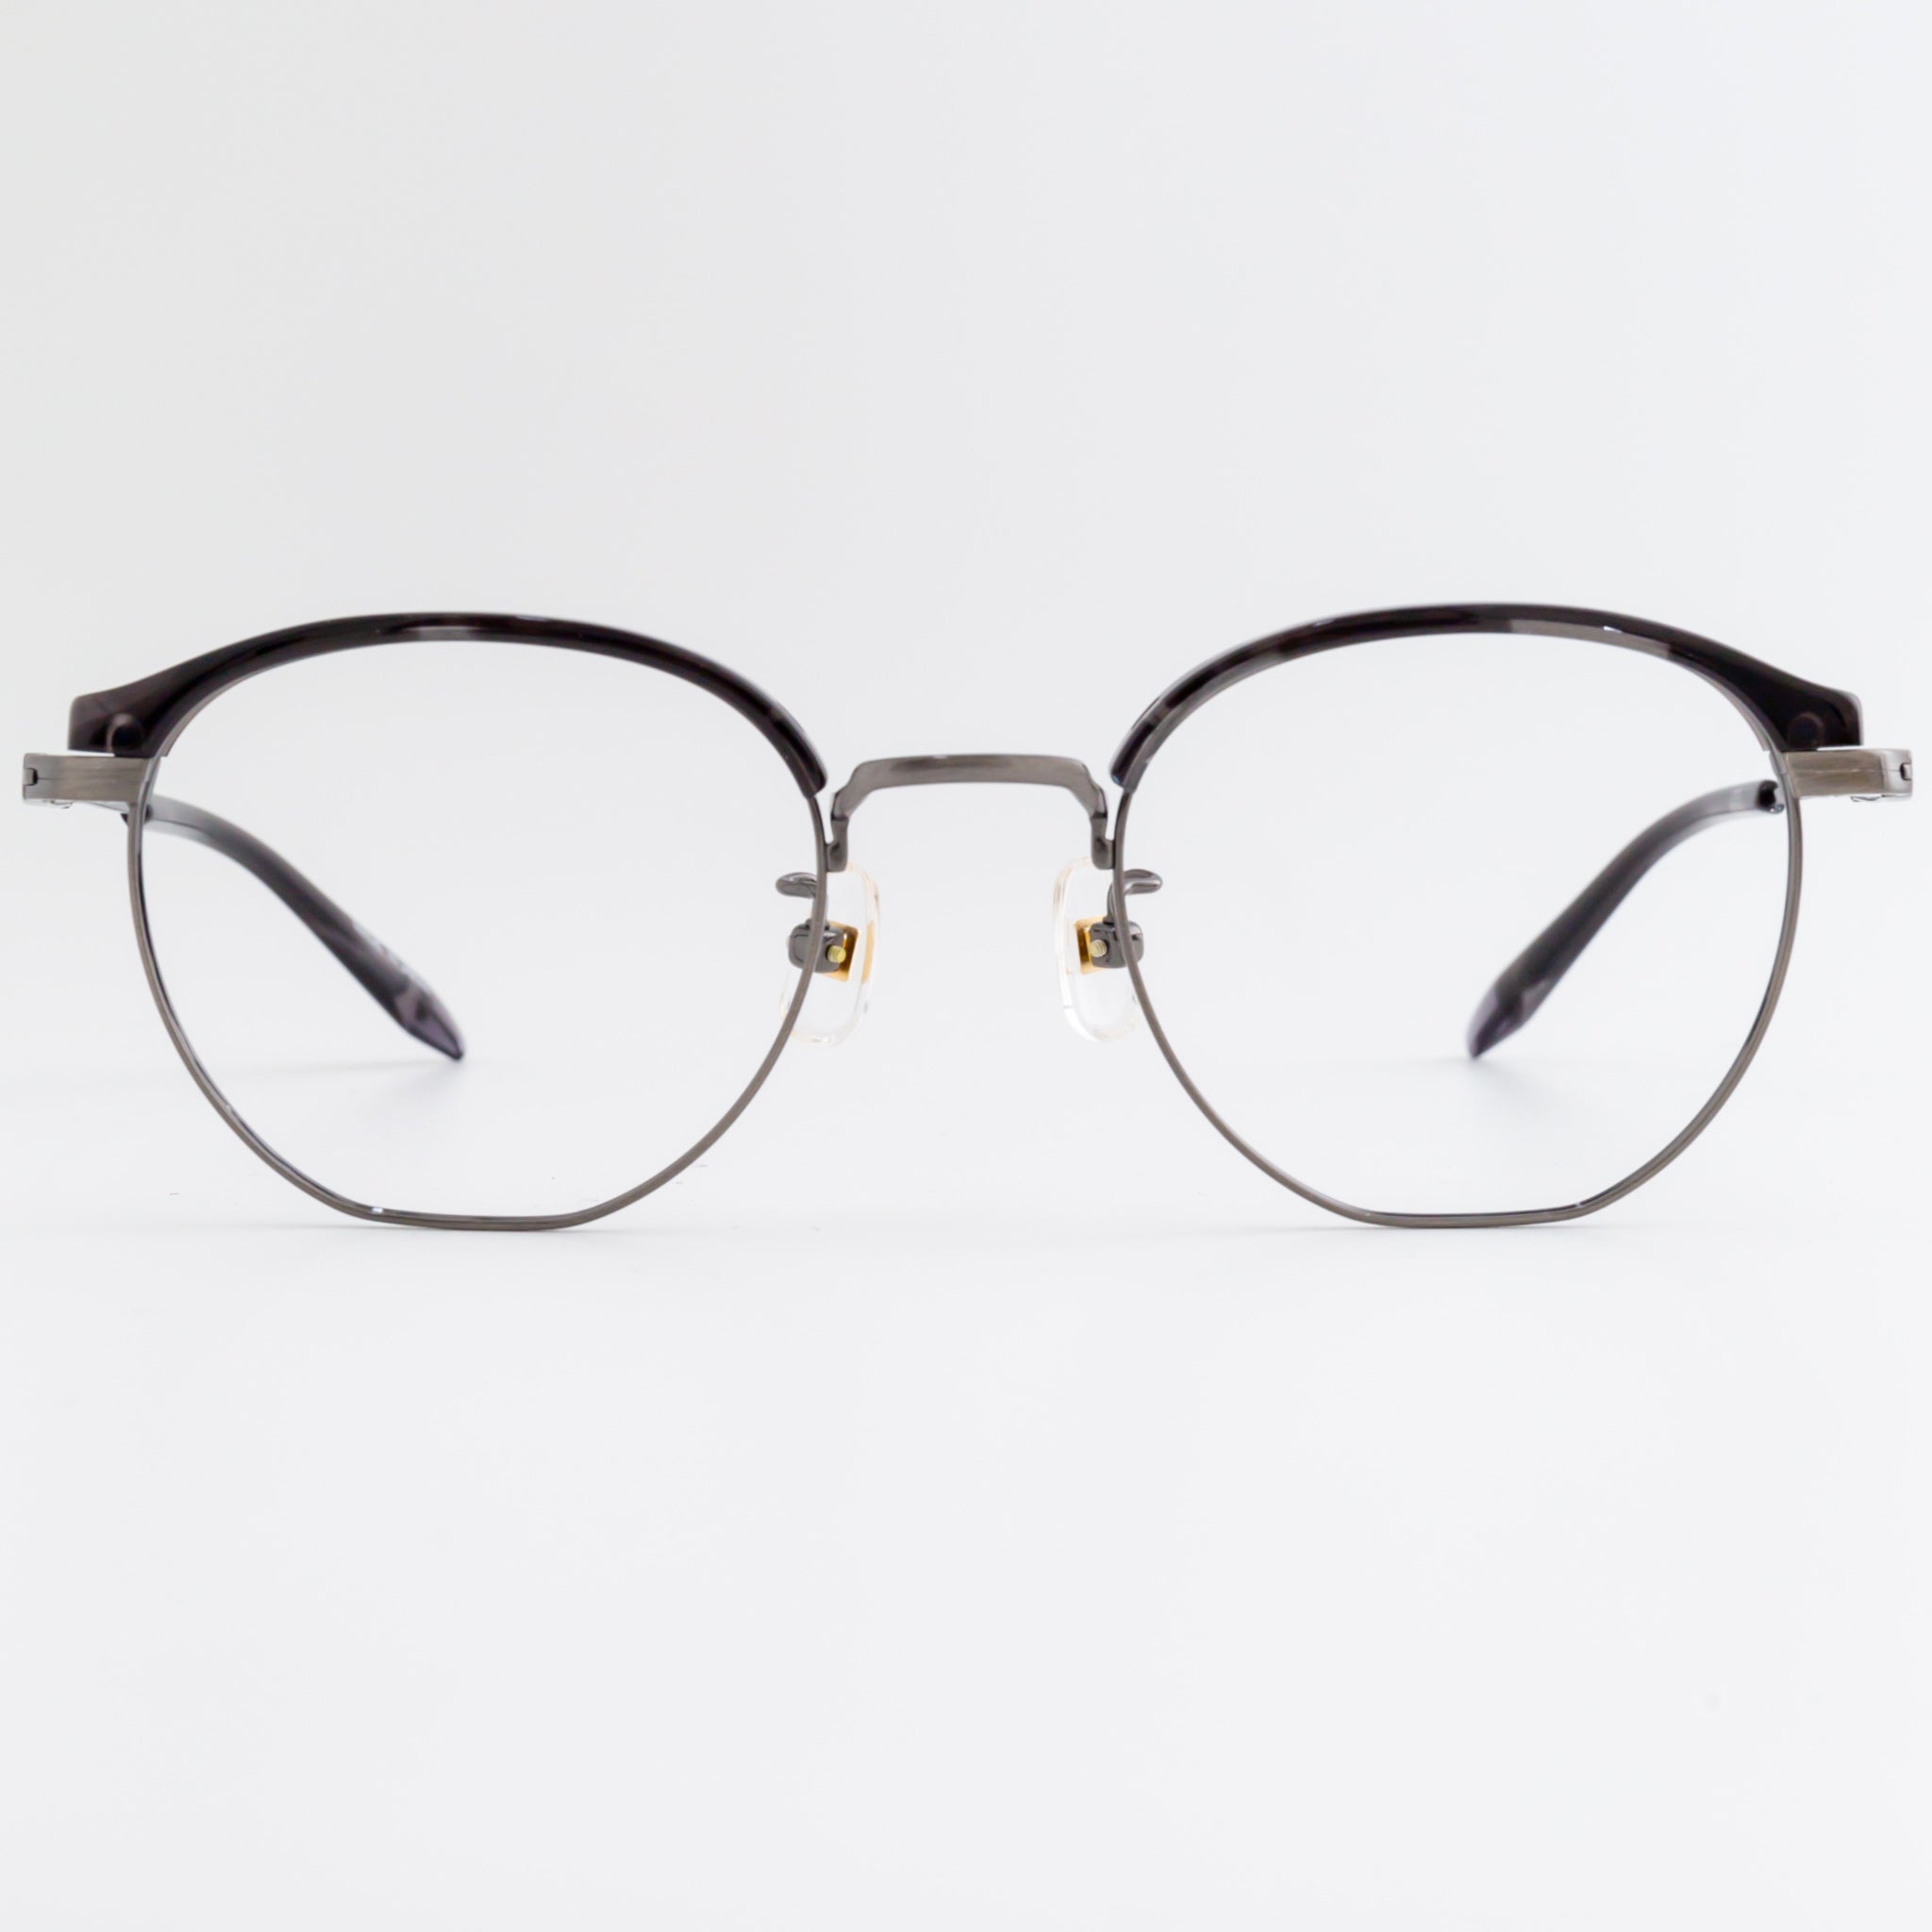 560591○ selecta 87-0002-1 眼鏡 メガネ フレーム状態 - サングラス 